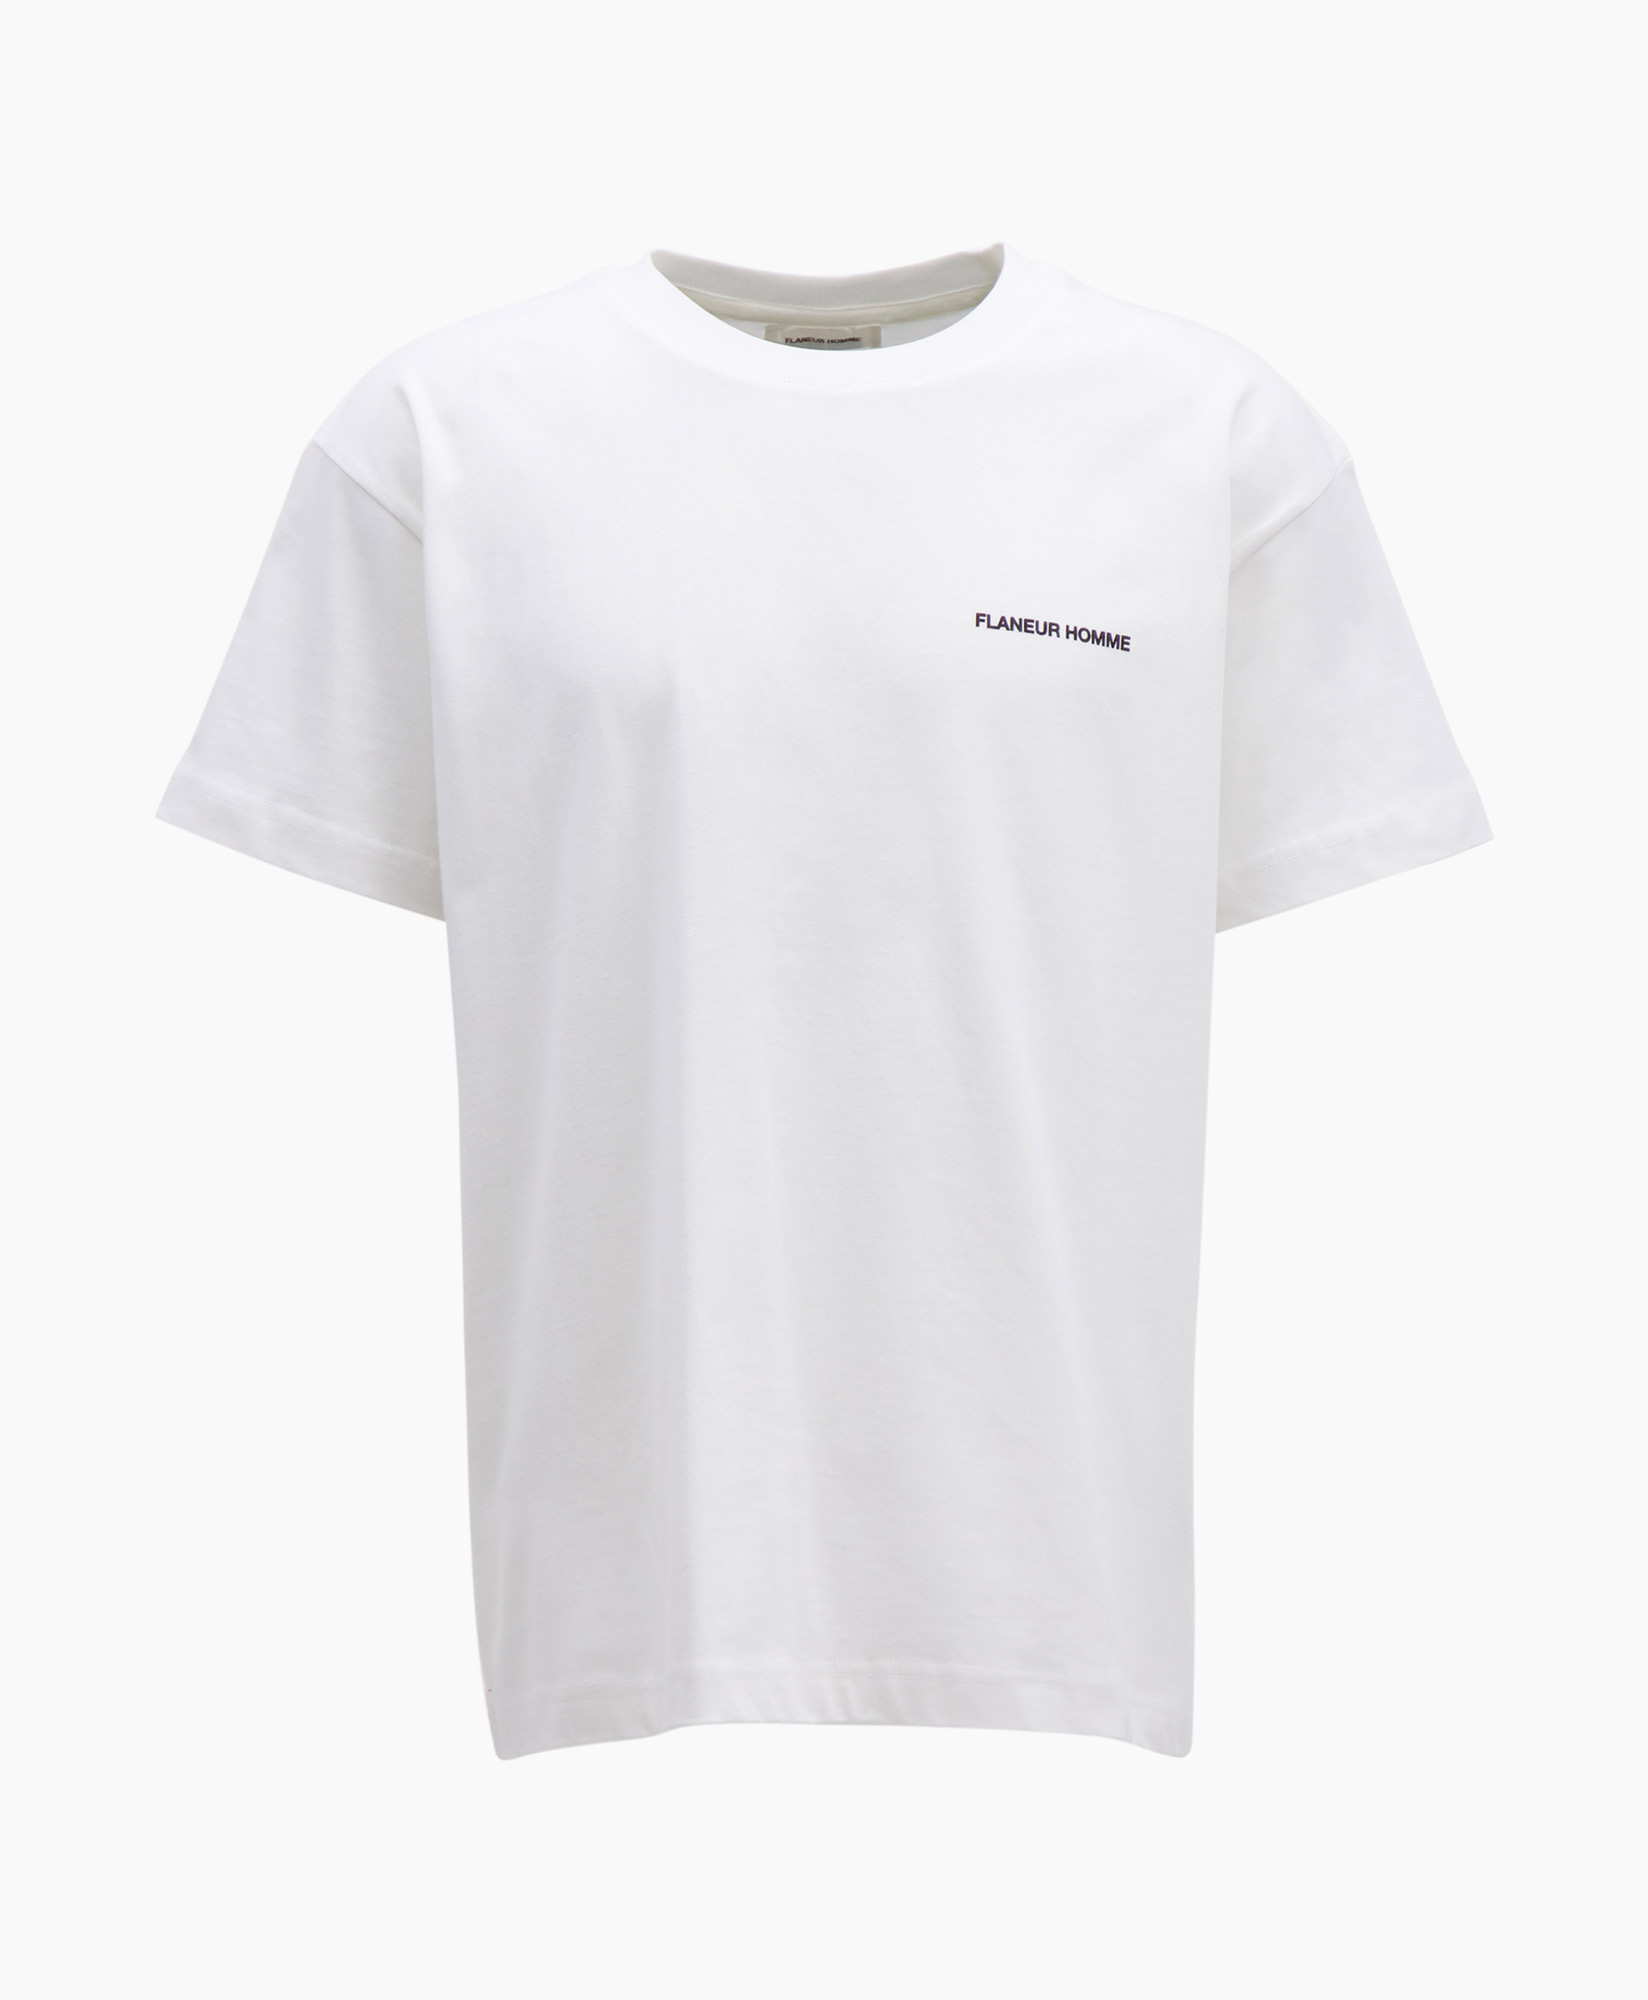 Flaneur Homme T-shirt Korte Mouw Peace T-shirt Wit